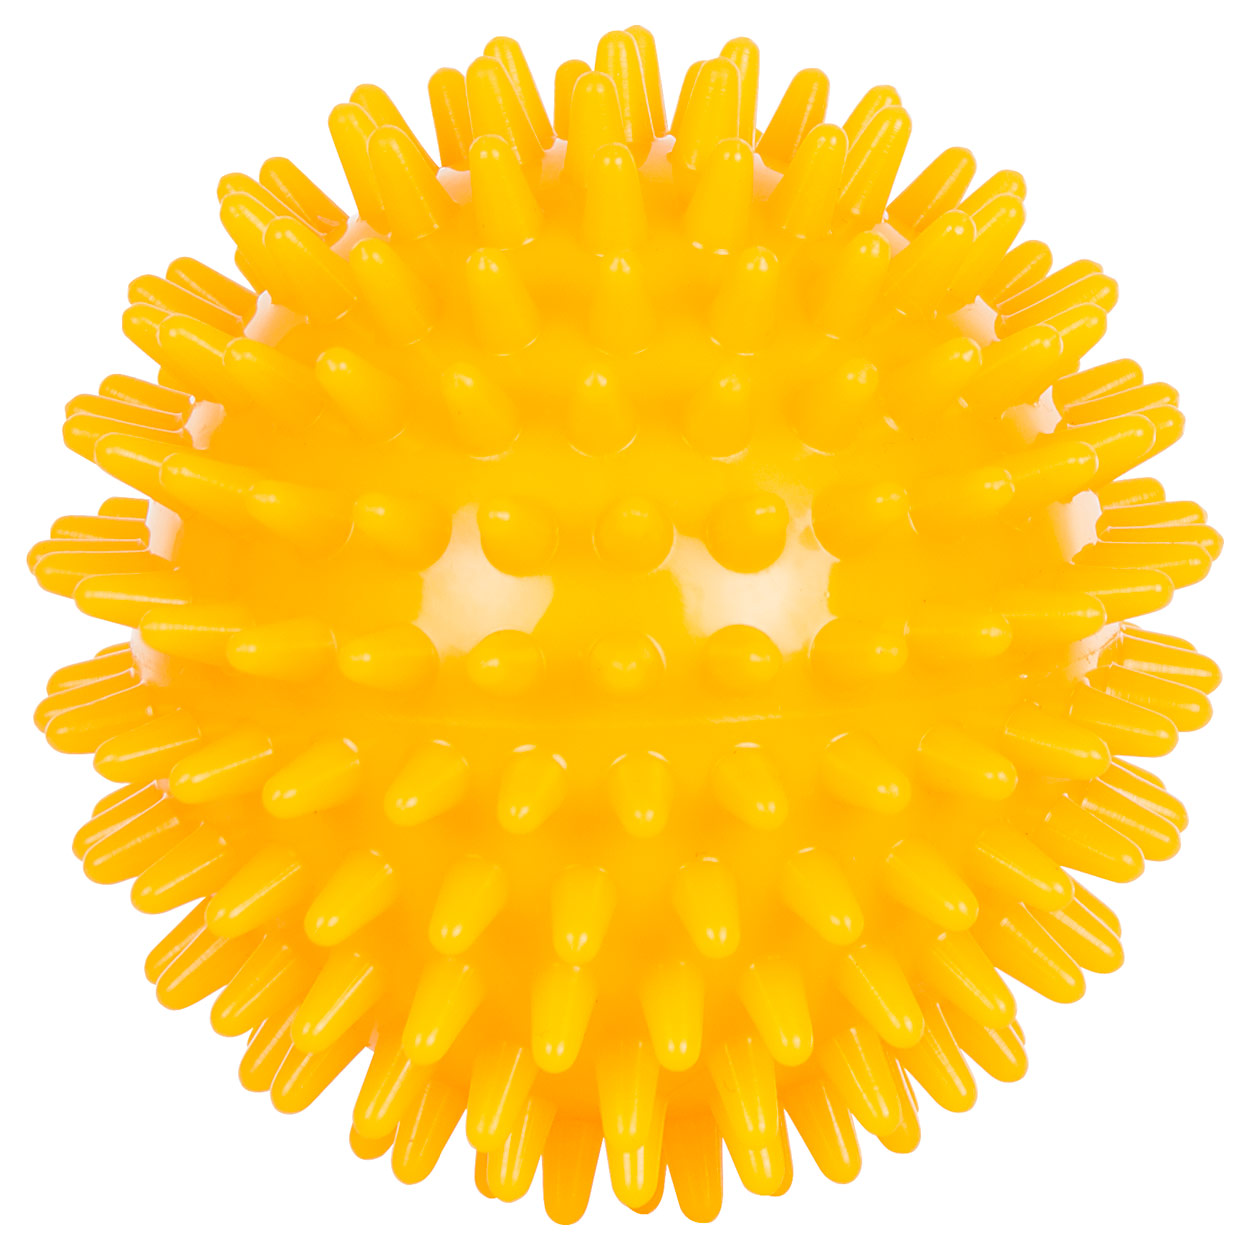 Igelball Massageball Reflexzonen Massage Selbstmassage mittel 8 cm gelb<br> gelb